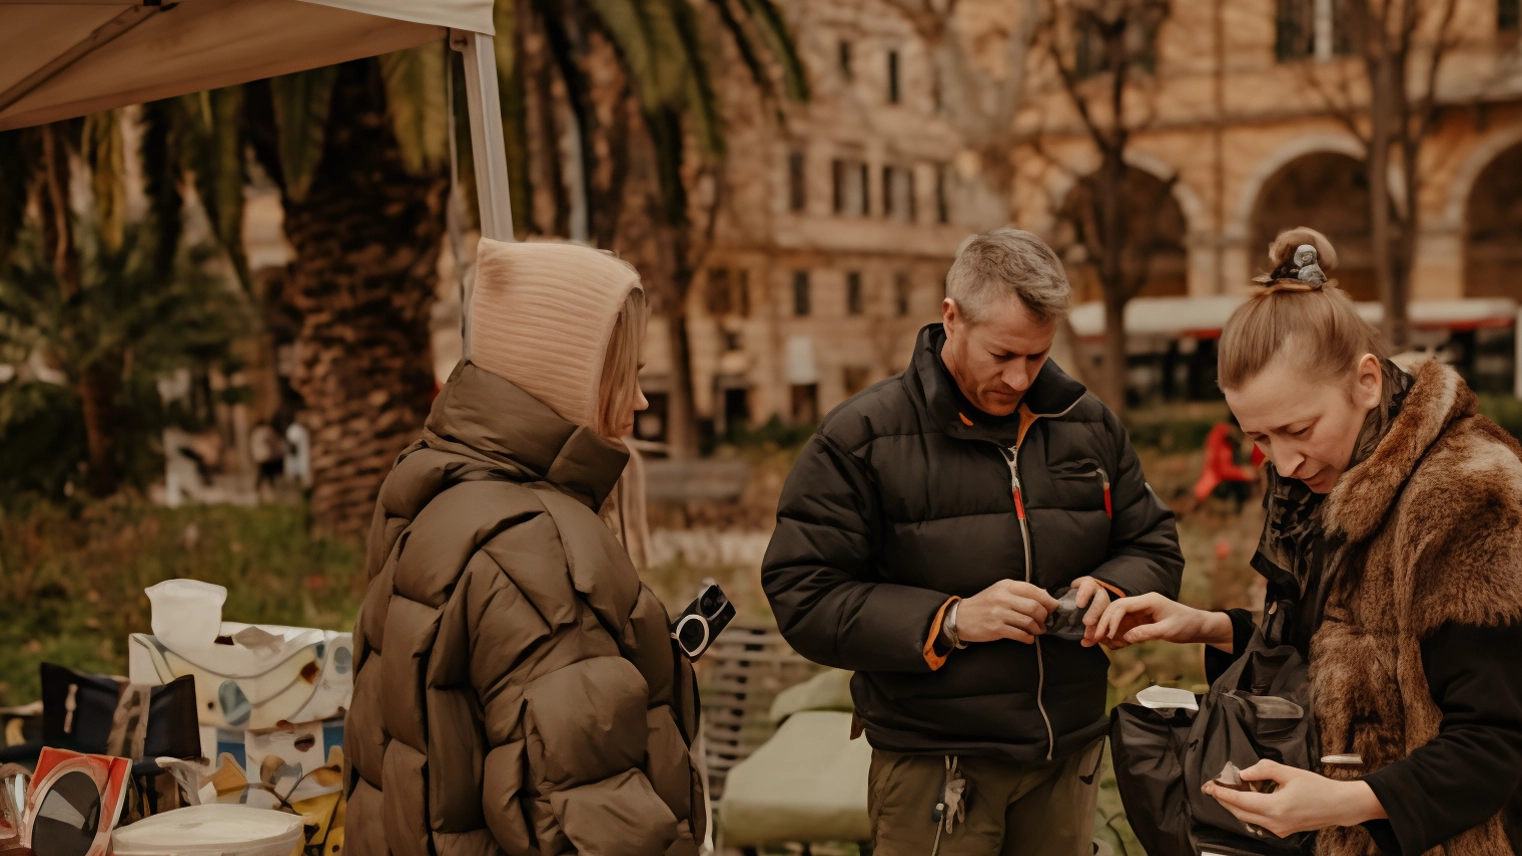 Il "Vintage Market" a piazza Cavour offre un'opportunità unica per gli amanti del vintage e per chi apprezza il recupero della memoria storica attraverso oggetti d'epoca. Un ritrovo per celebrare la bellezza e l'unicità delle opere d'arte del passato.